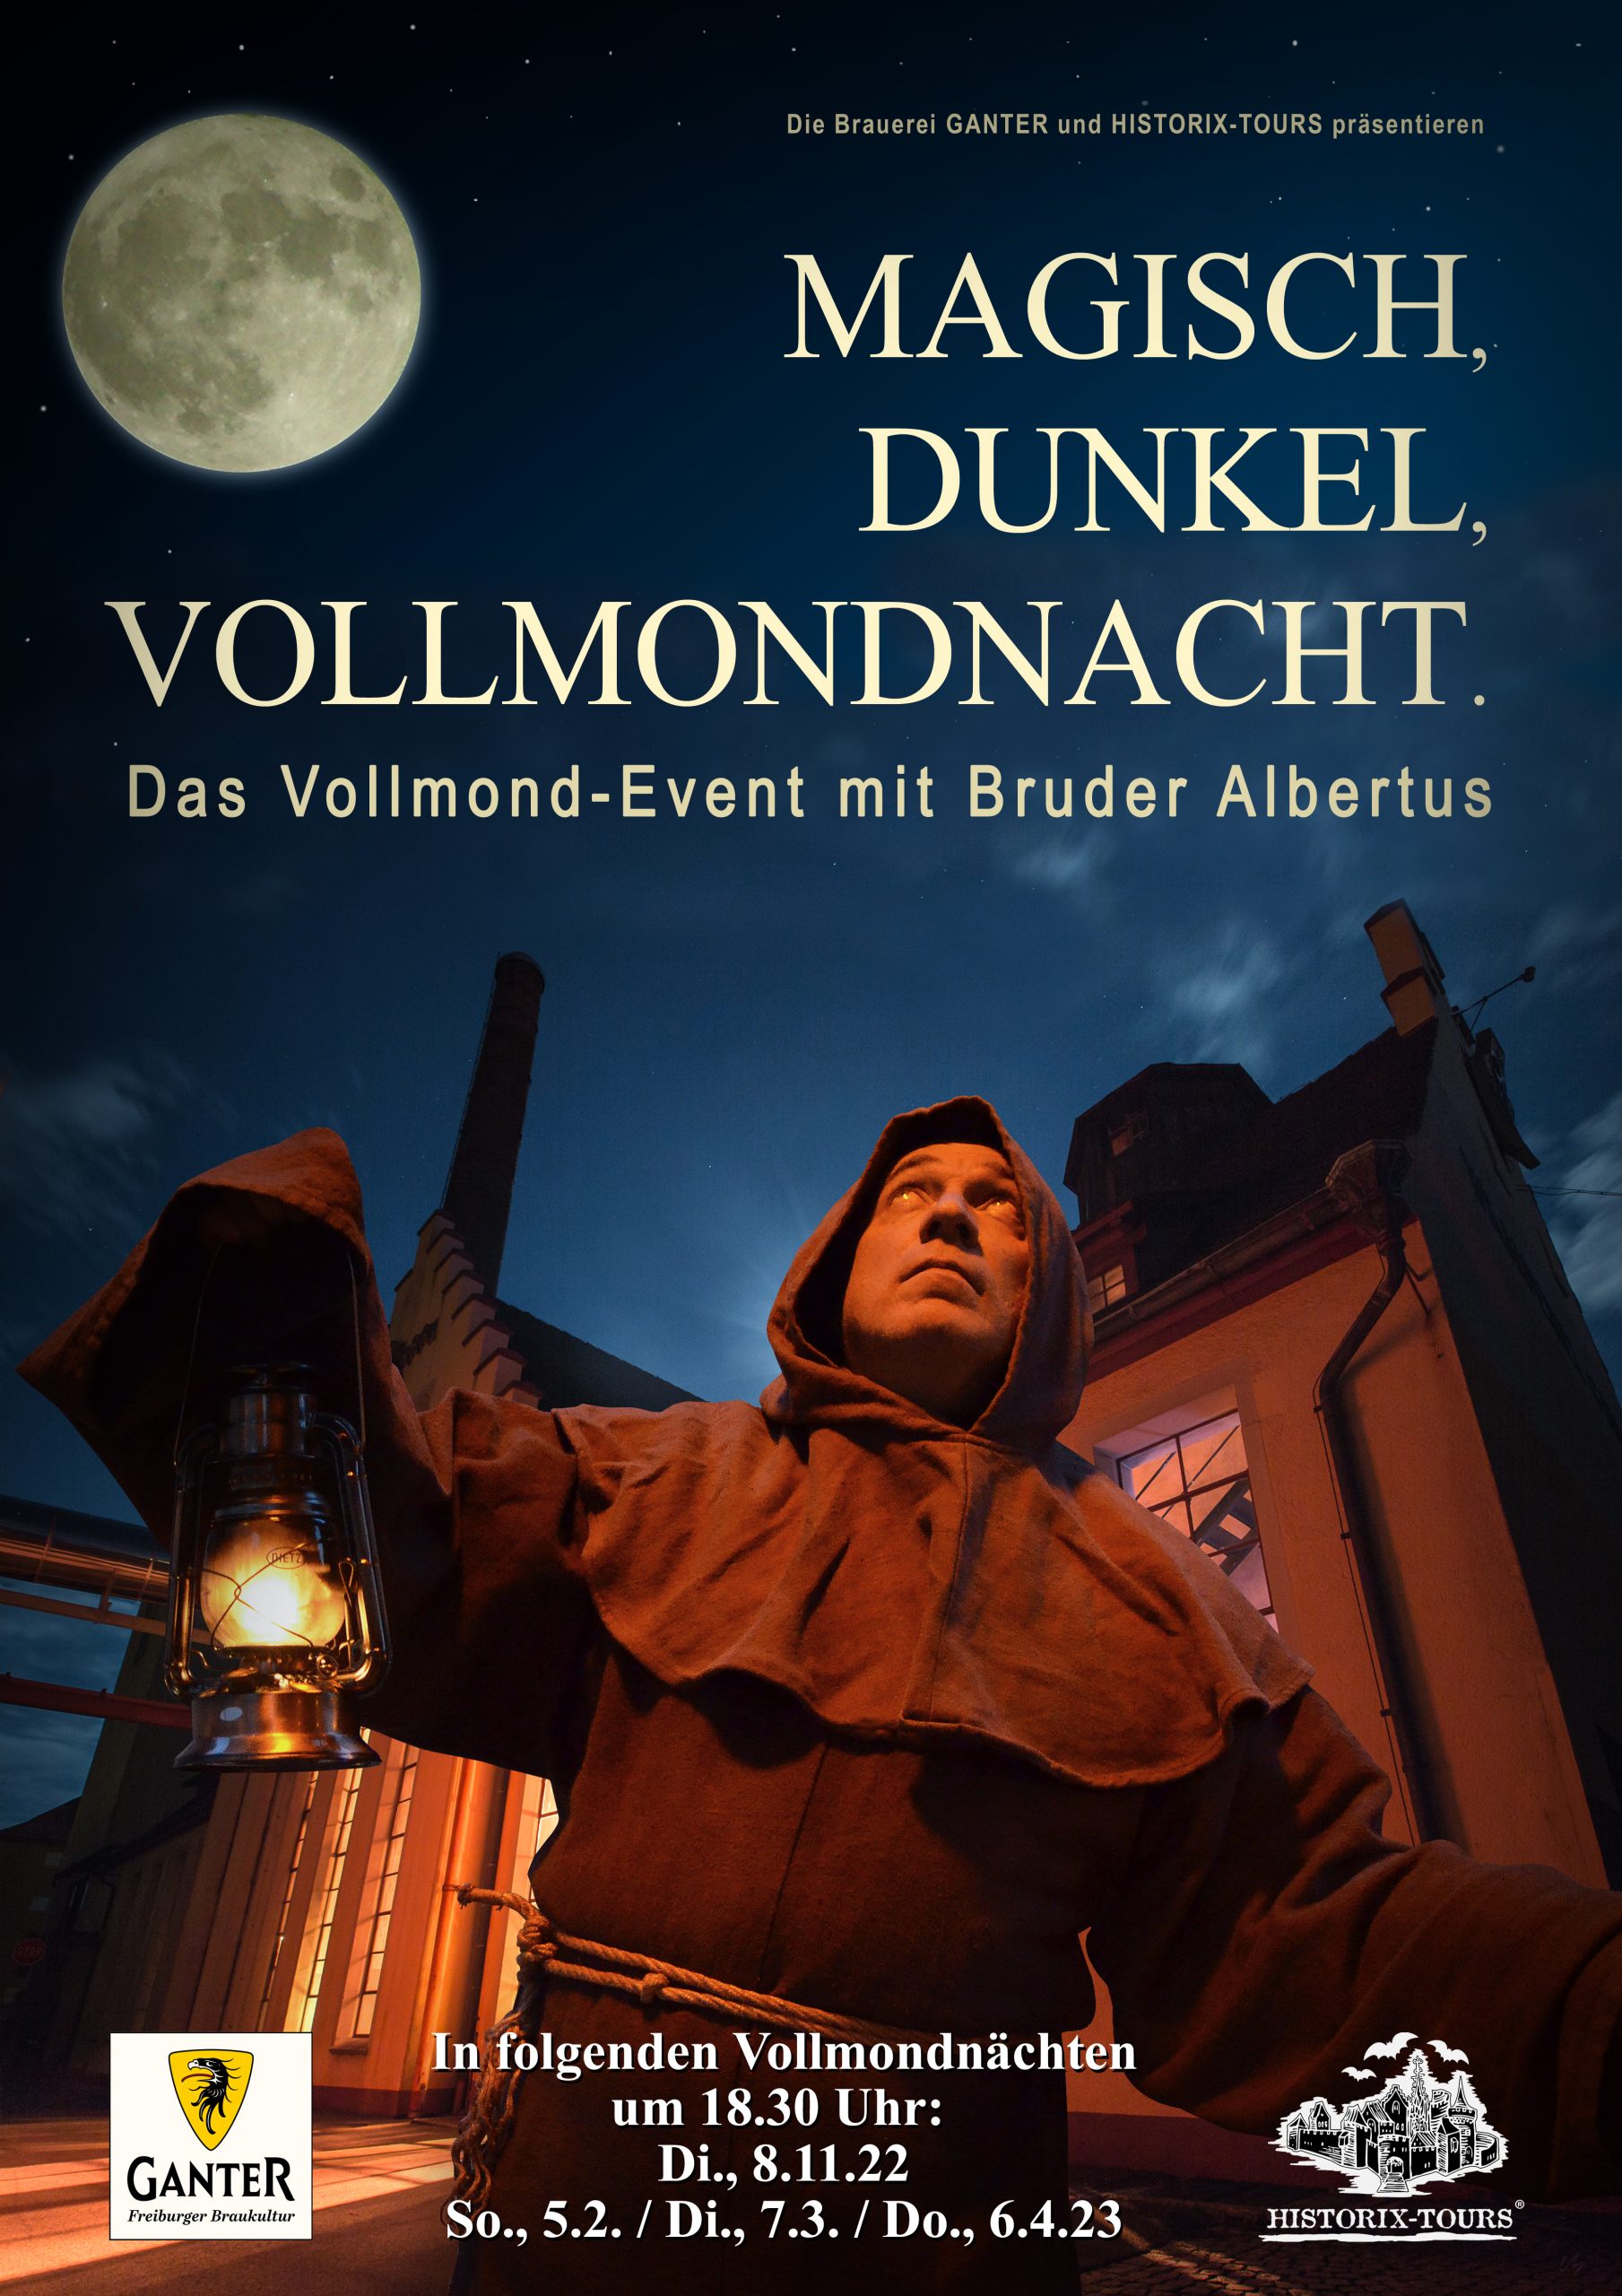 Vollmond-Event: "Magisch, Dunkel, Vollmondnacht" - In Zusammenarbeit mit der Brauerei Ganter